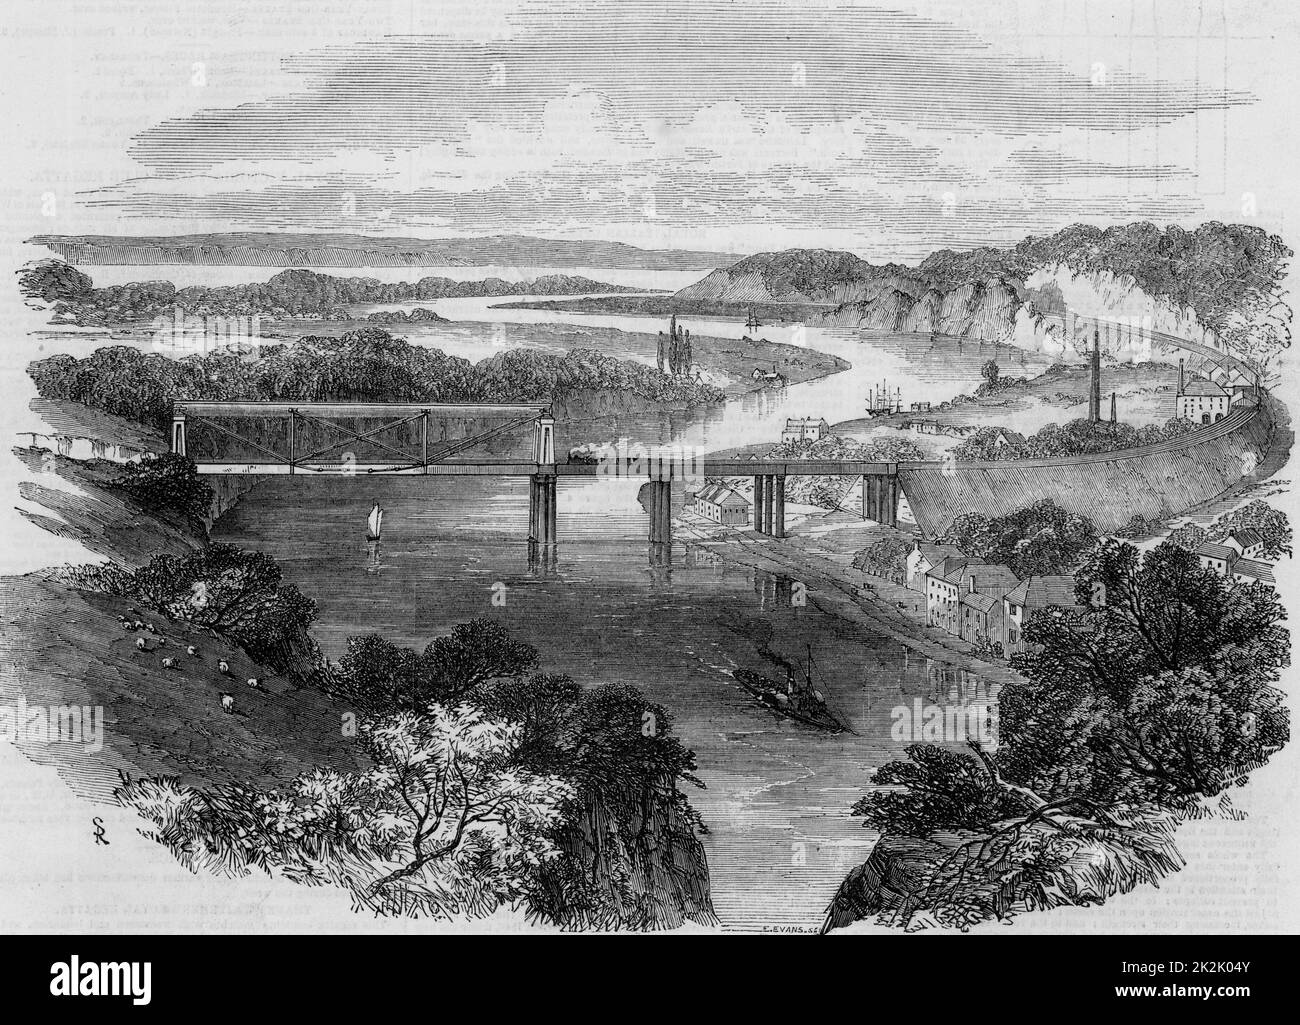 South Wales Railway: Eröffnung des Newport Bridge, 1852. Schmiedeeisen tubular Hängebrücke über den Fluss Wye in Chepstow. Diese Brücke, gebaut 1849-1852, wurde ein innovatives Design von Sambaed Kingdom Brunel (1806-1859) und die Verwendung von schmiedeeisernen tubular Träger gilt als ein Dummy run für sein letztes großes Meisterwerk, der Royal Albert Brücke über den Tamar in Saltash. Die Newport Bridge durchgeführt die South Wales Railway über Wye gerade über die Kreuzung mit der Severn. Brunel war Ingenieur an die Eisenbahn. Von der "Illustrated London News". (London, 24. Juli 1852). Stockfoto